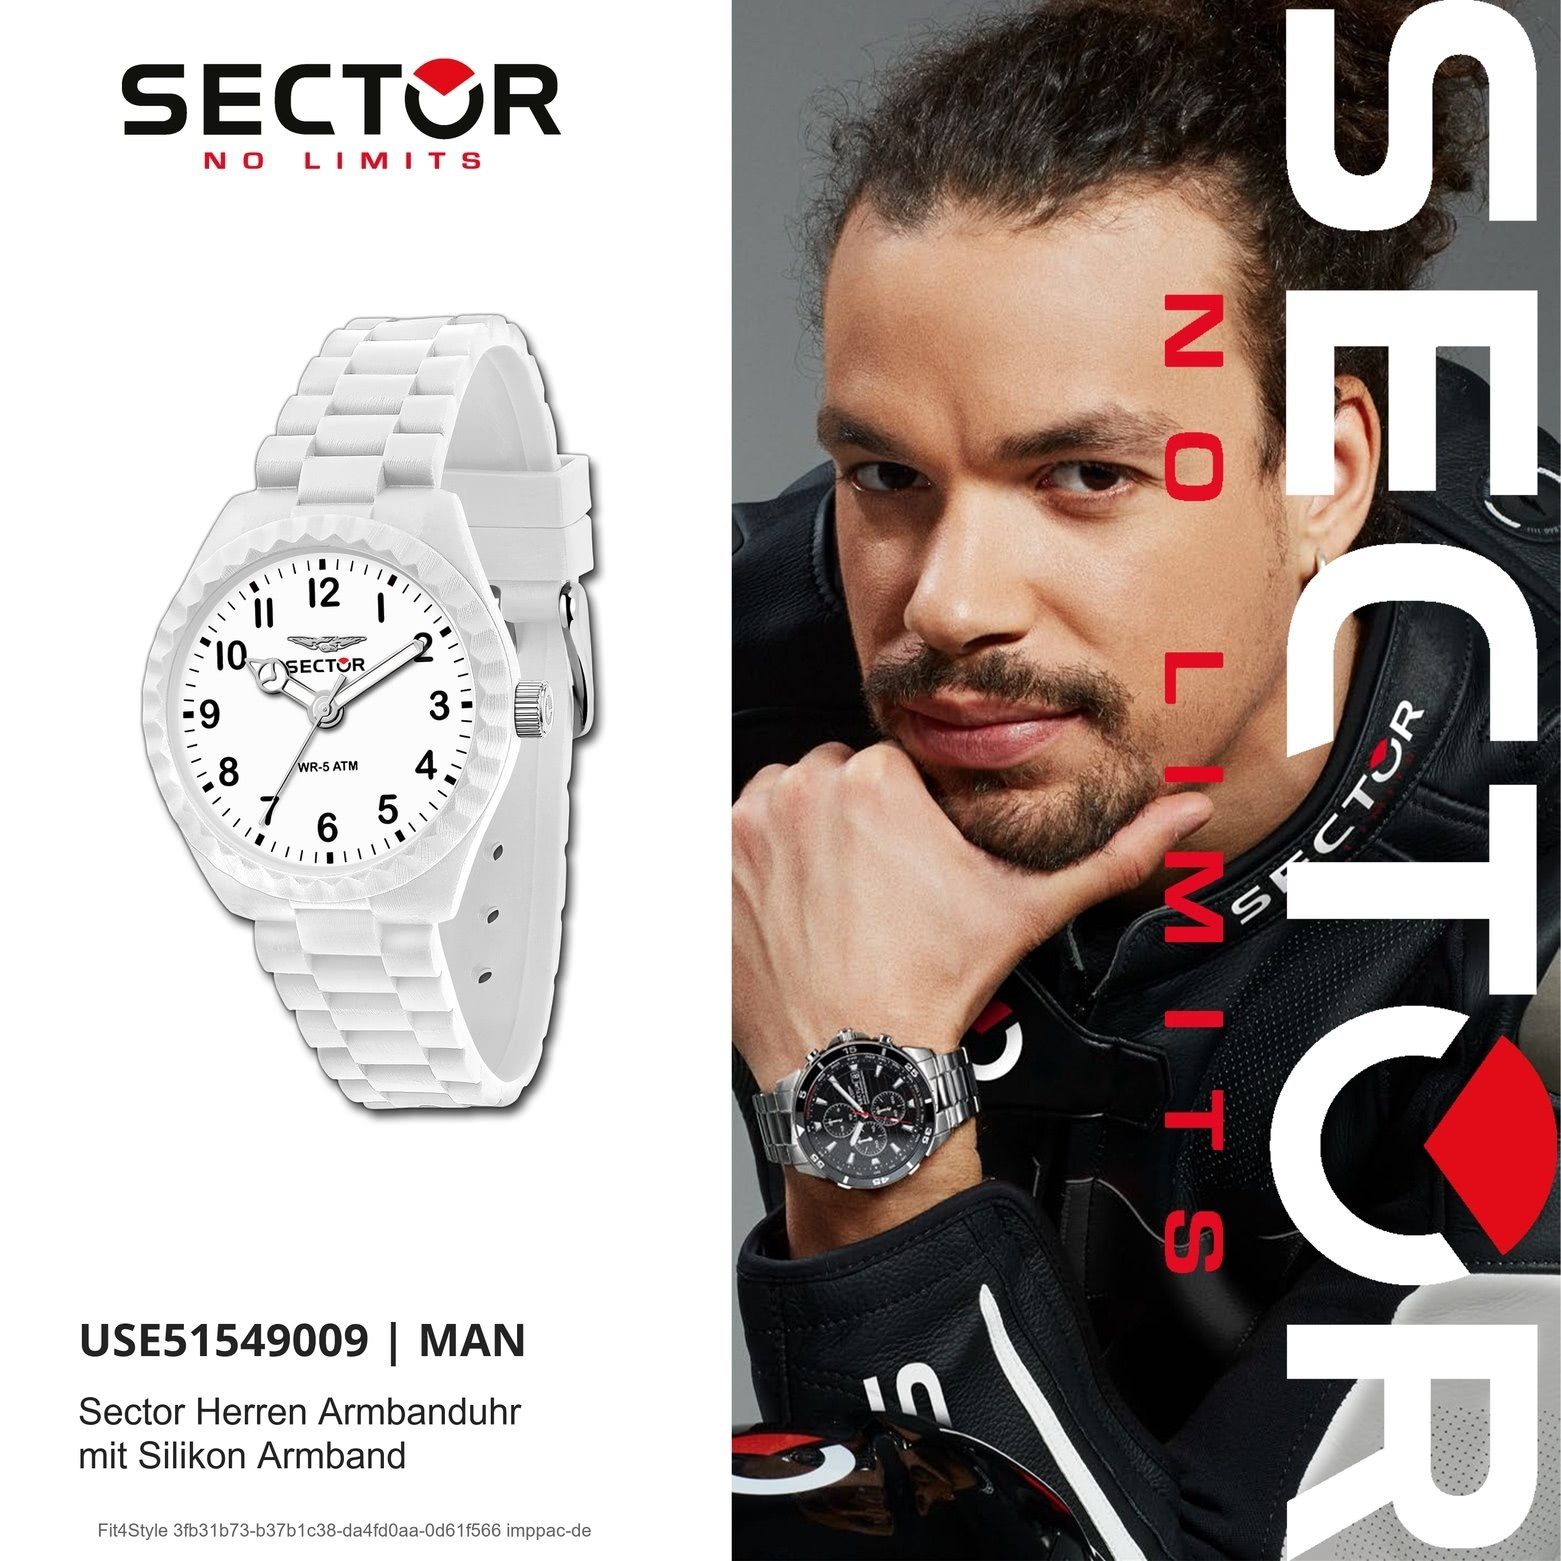 Analog, Armbanduhr Quarzuhr Fashion Herren Sector Silikonarmband weiß, Herren 42mm), rund, Armbanduhr (ca. groß Sector